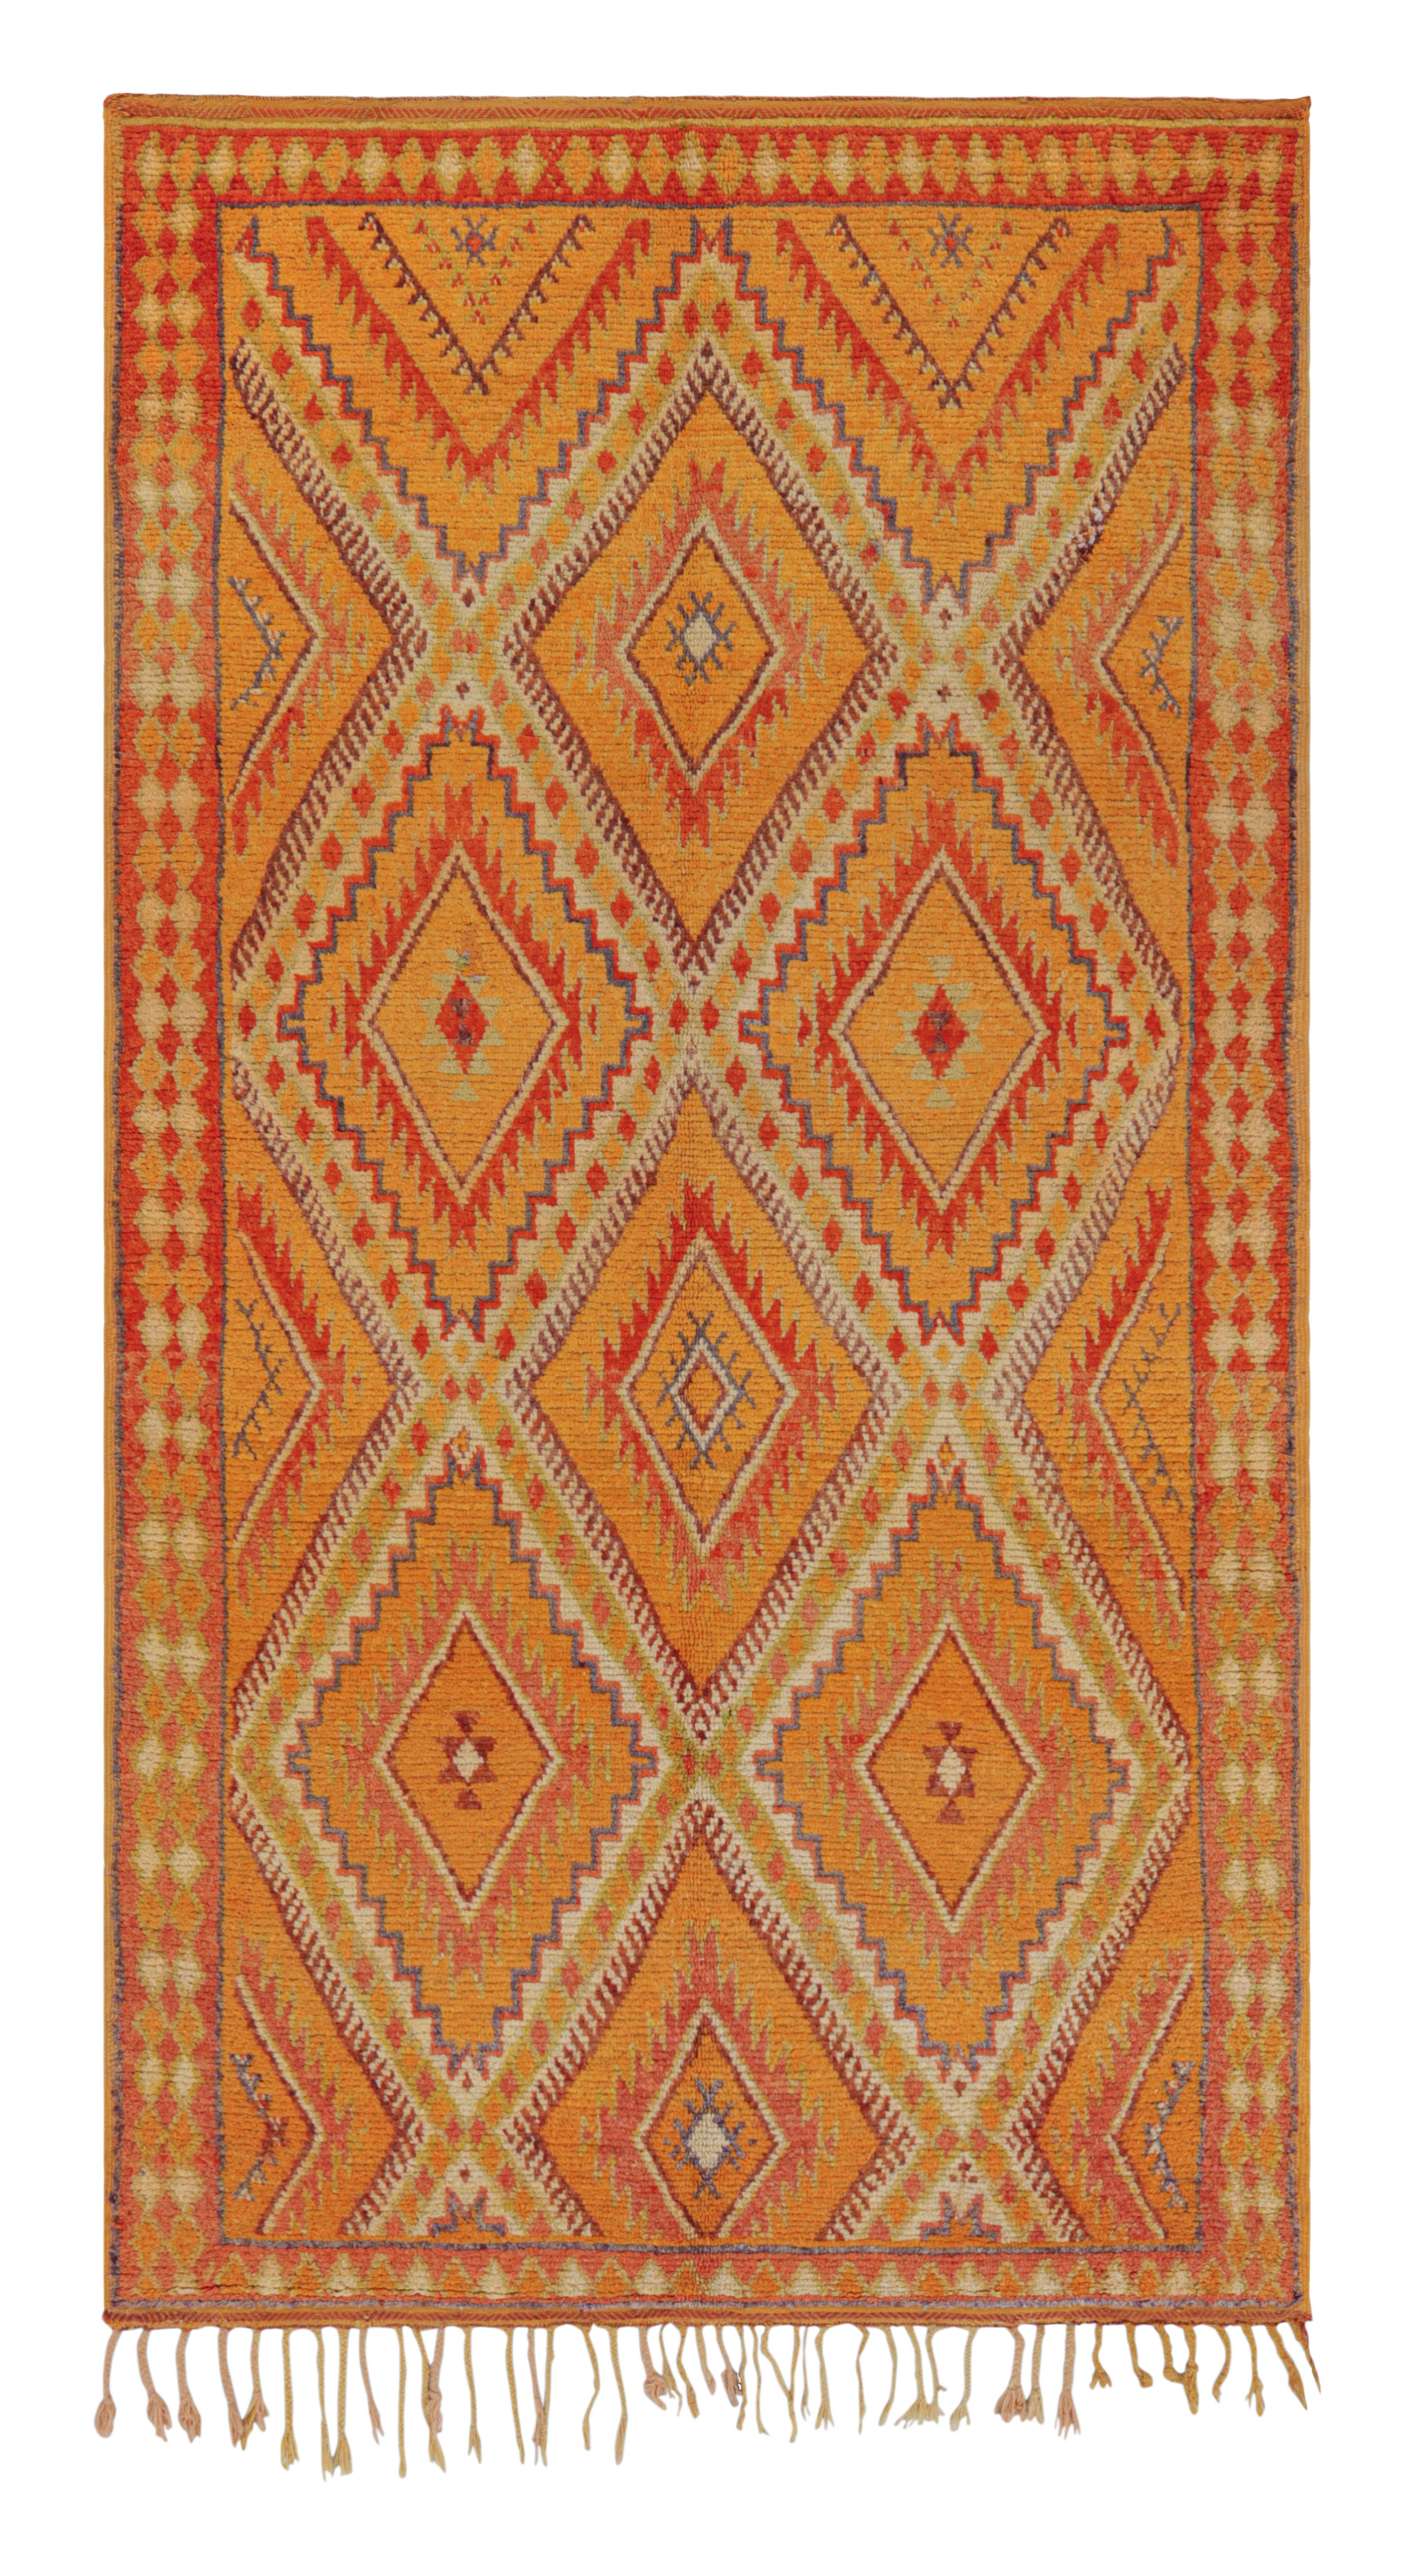 Marokkanischer Teppich aus Berber mit Gold-Diamant-Muster von Teppich & Kelim, 1950er Jahre